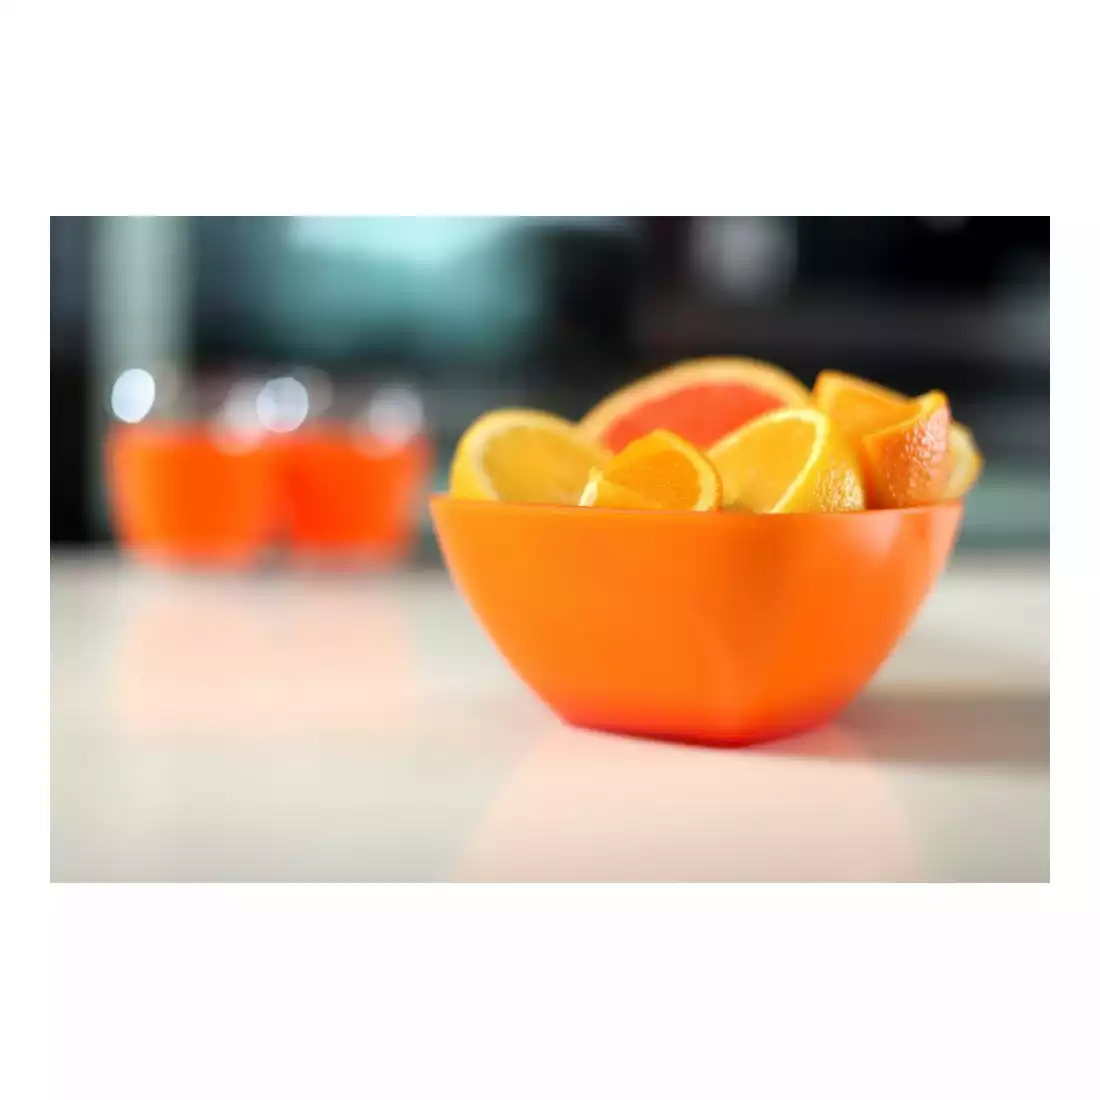 VIALLI DESIGN LIVIO akrylowa miska kwadratowa, pomarańczowa